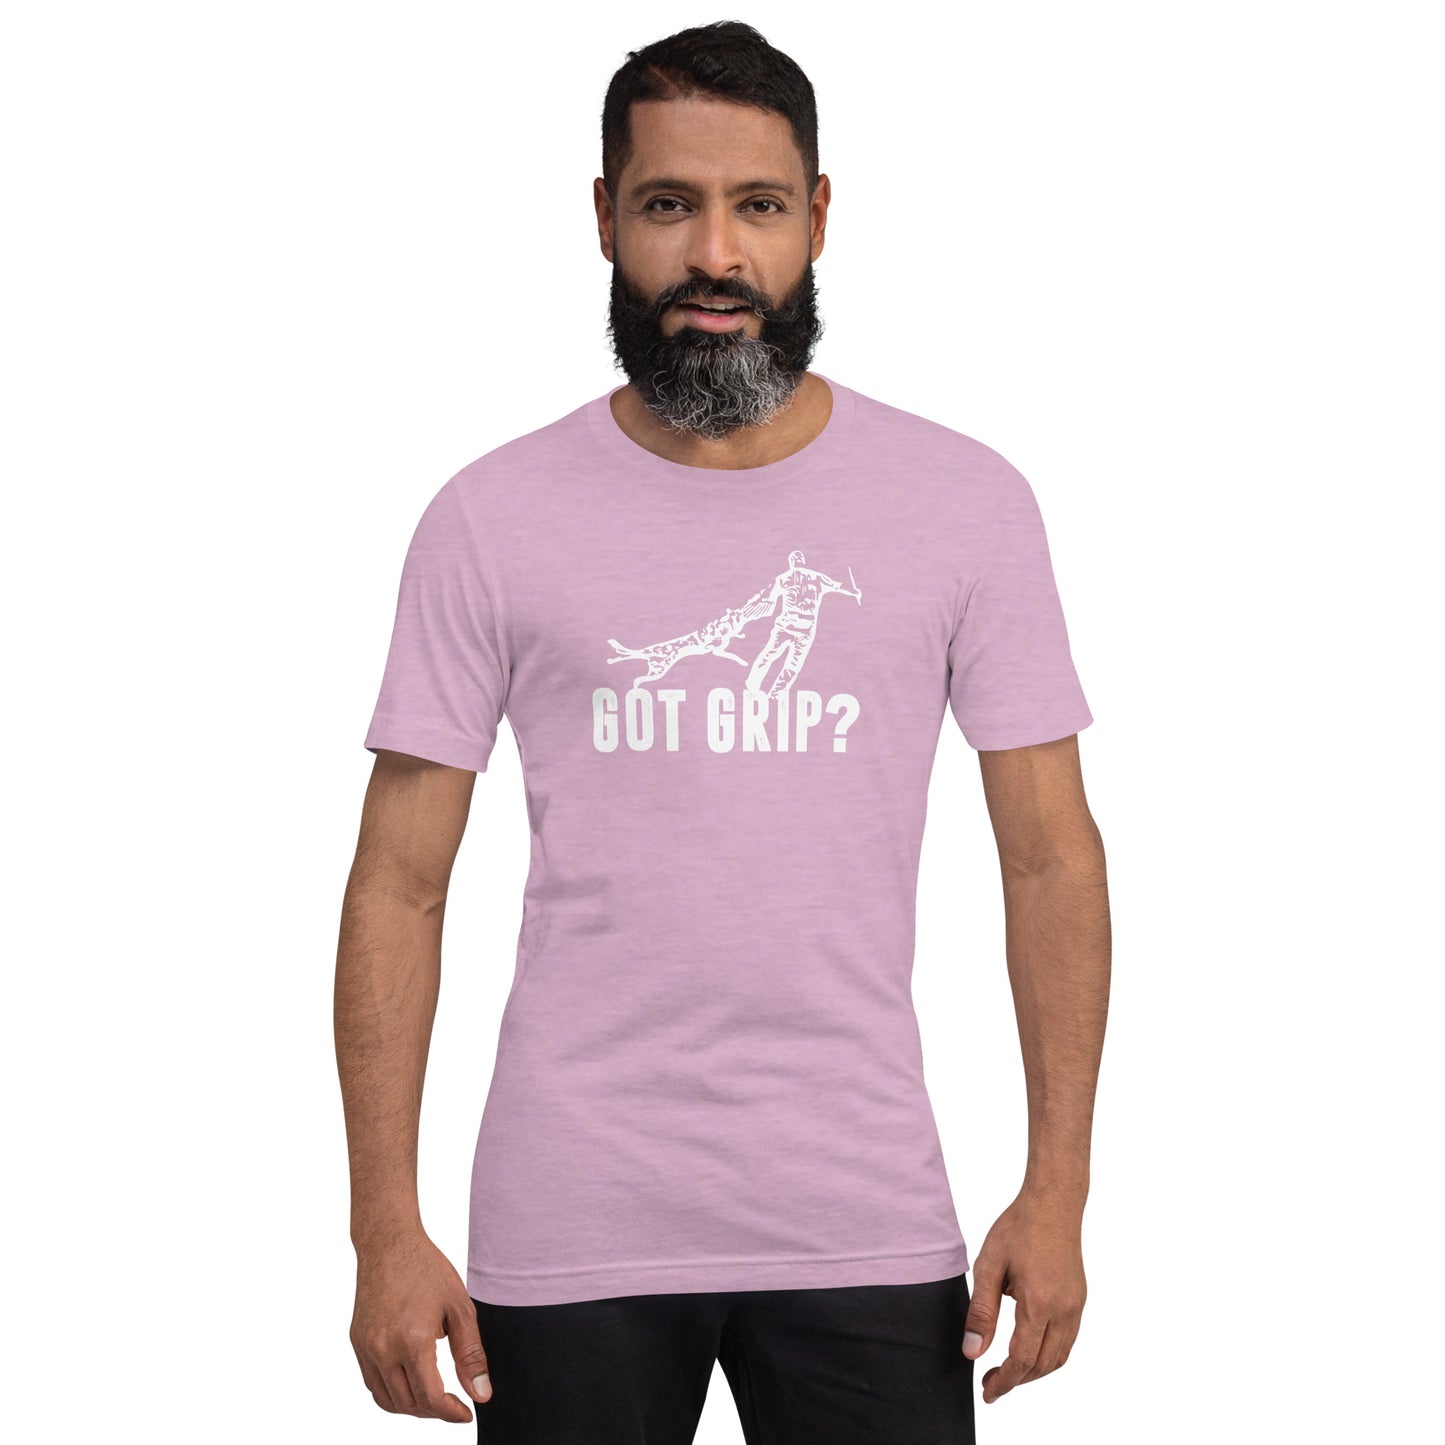 GOT GRIP? - Unisex t-shirt